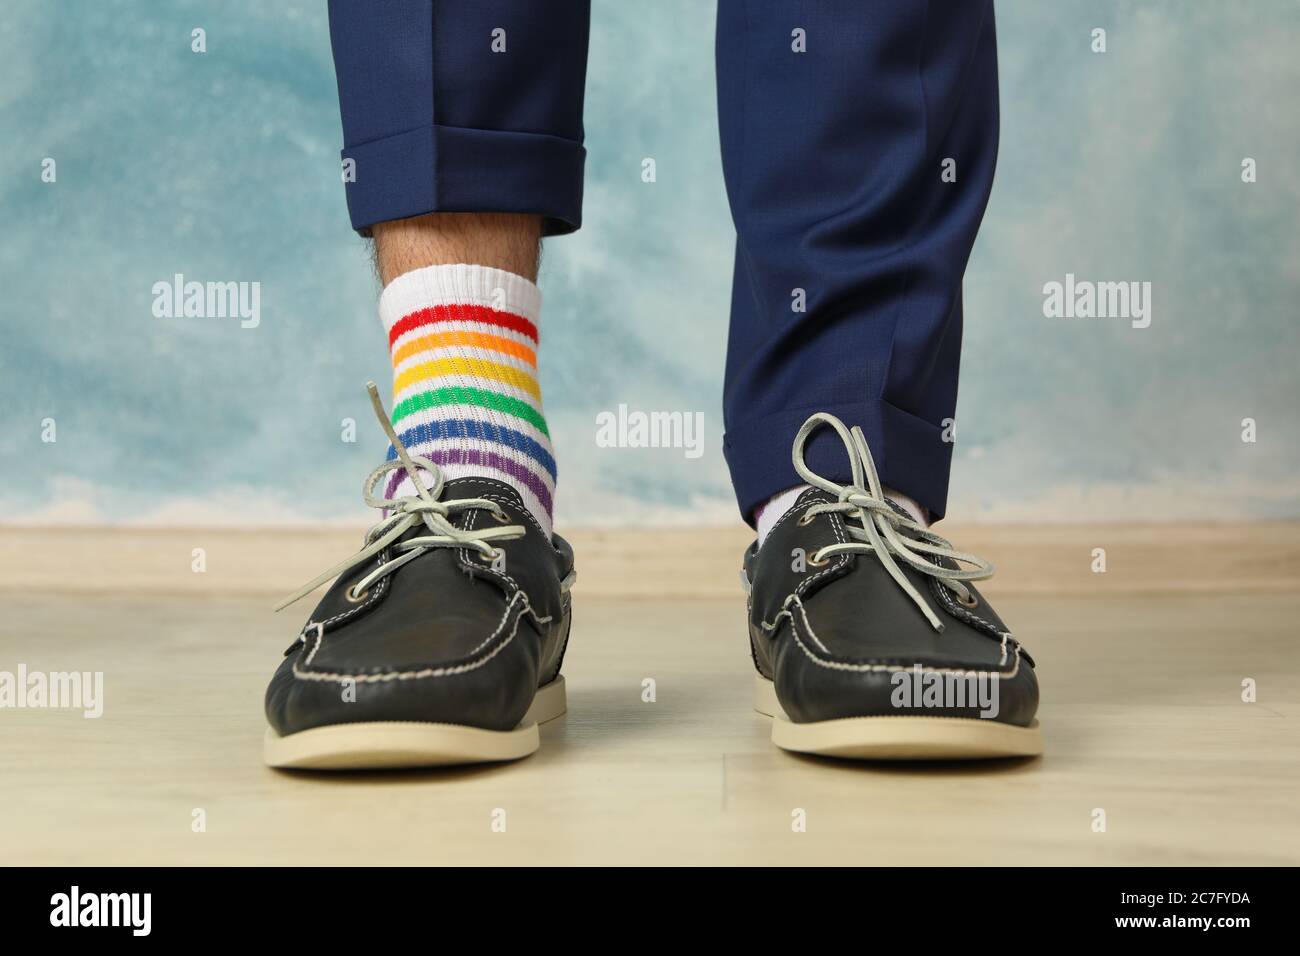 Mann in blauer Hose, Slipper und LGBT Socken vor blauem Hintergrund  Stockfotografie - Alamy